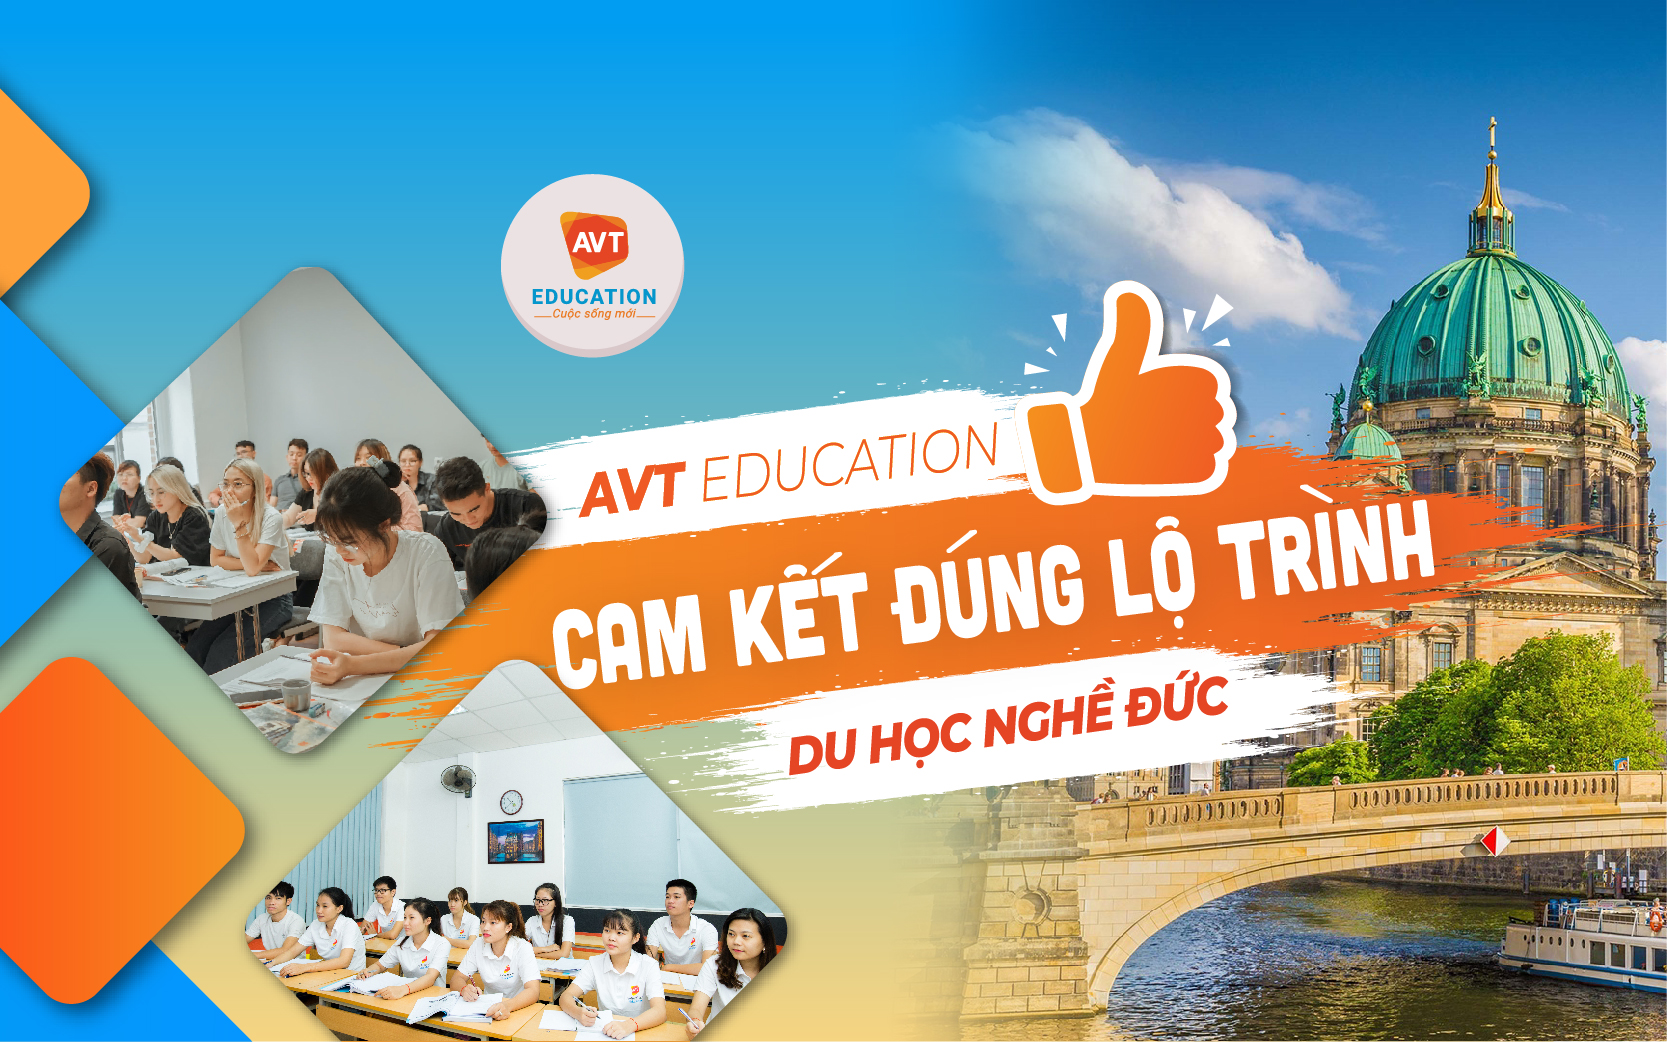 AVT Education cam kết đúng lộ trình du học nghề Đức